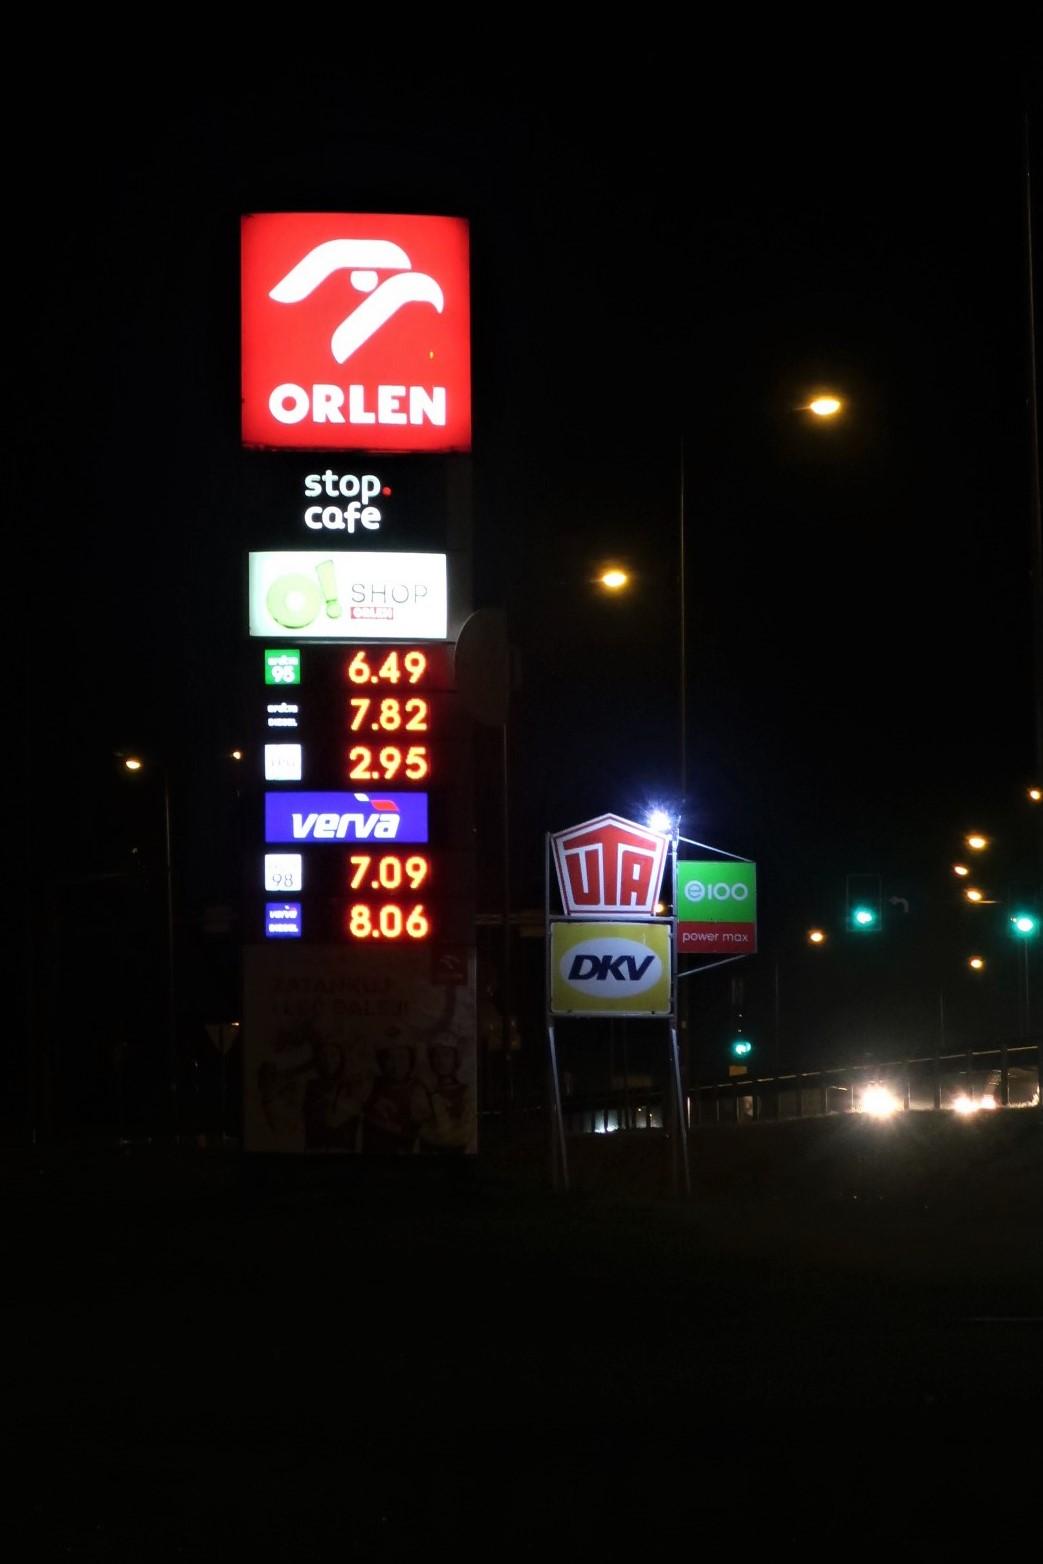 ceny pohonných hmot - benzín zde stojí 36,-Kč, u nás 40,-Kč